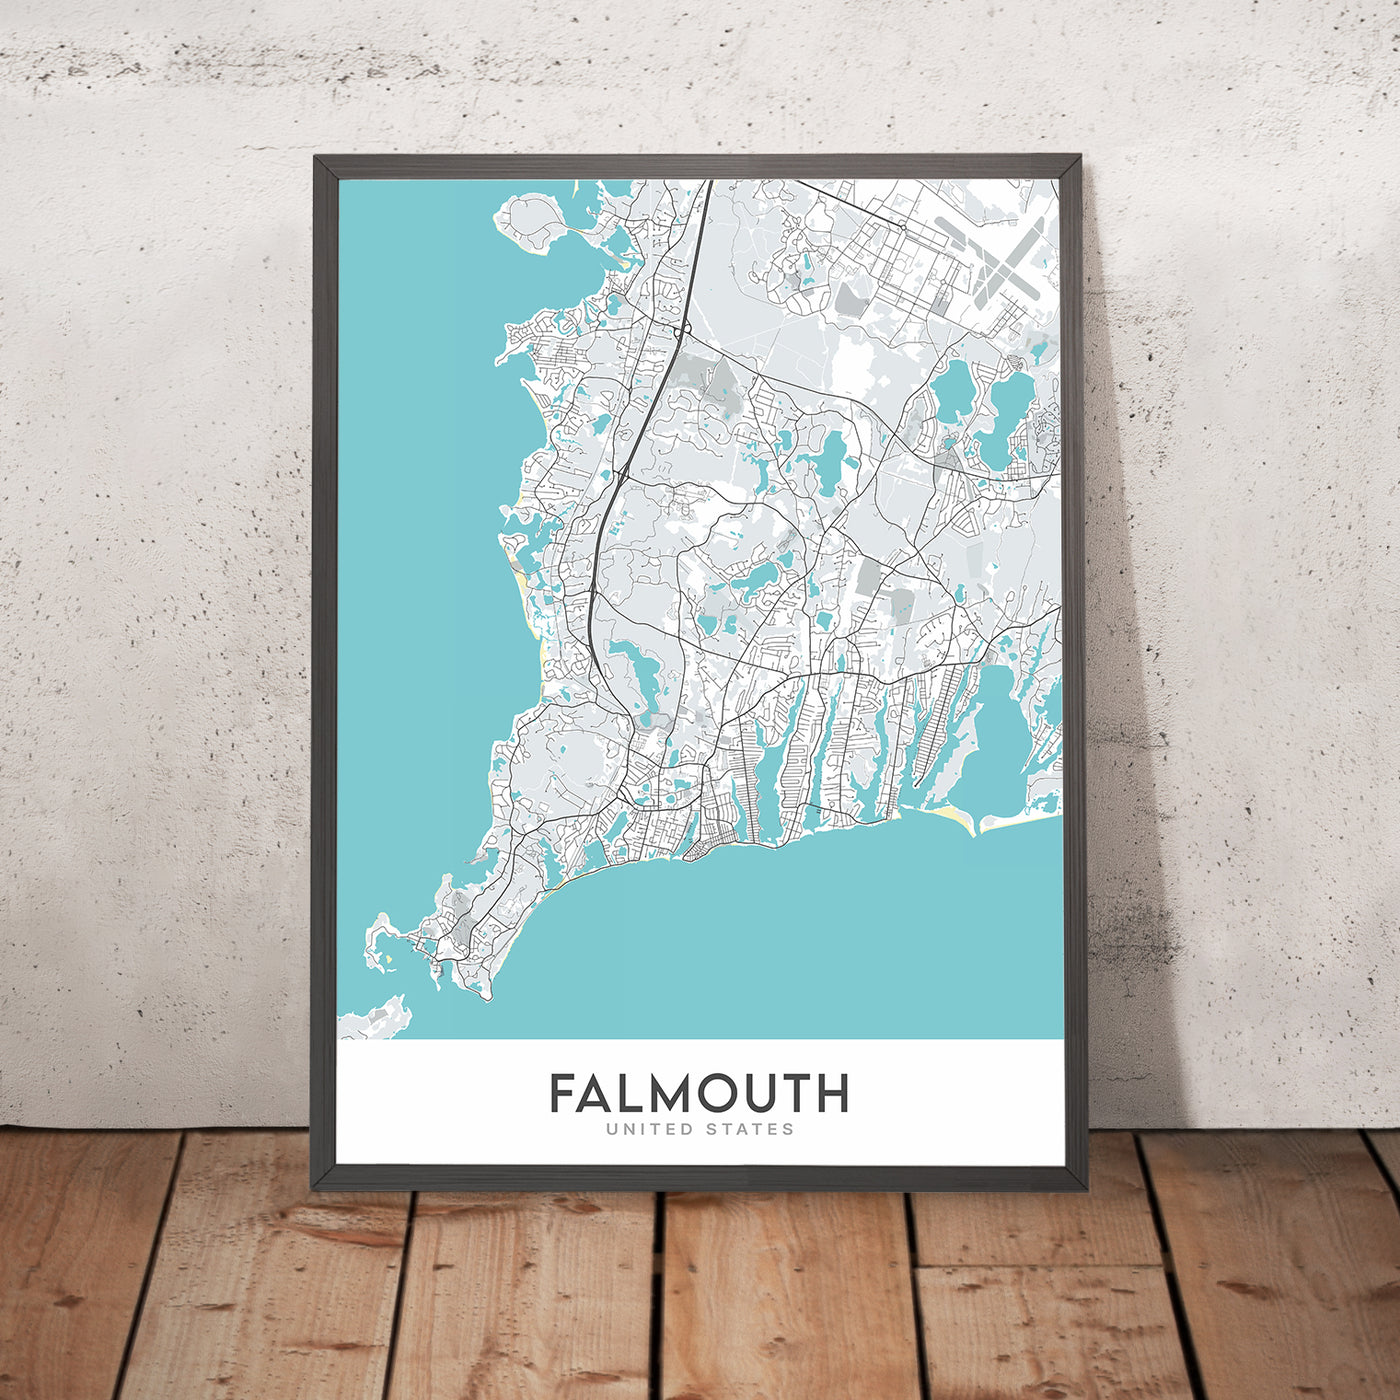 Plan de la ville moderne de Falmouth, MA : port de Falmouth, phare de Nobska Point, institution océanographique de Woods Hole, laboratoire de biologie marine, Falmouth Heights